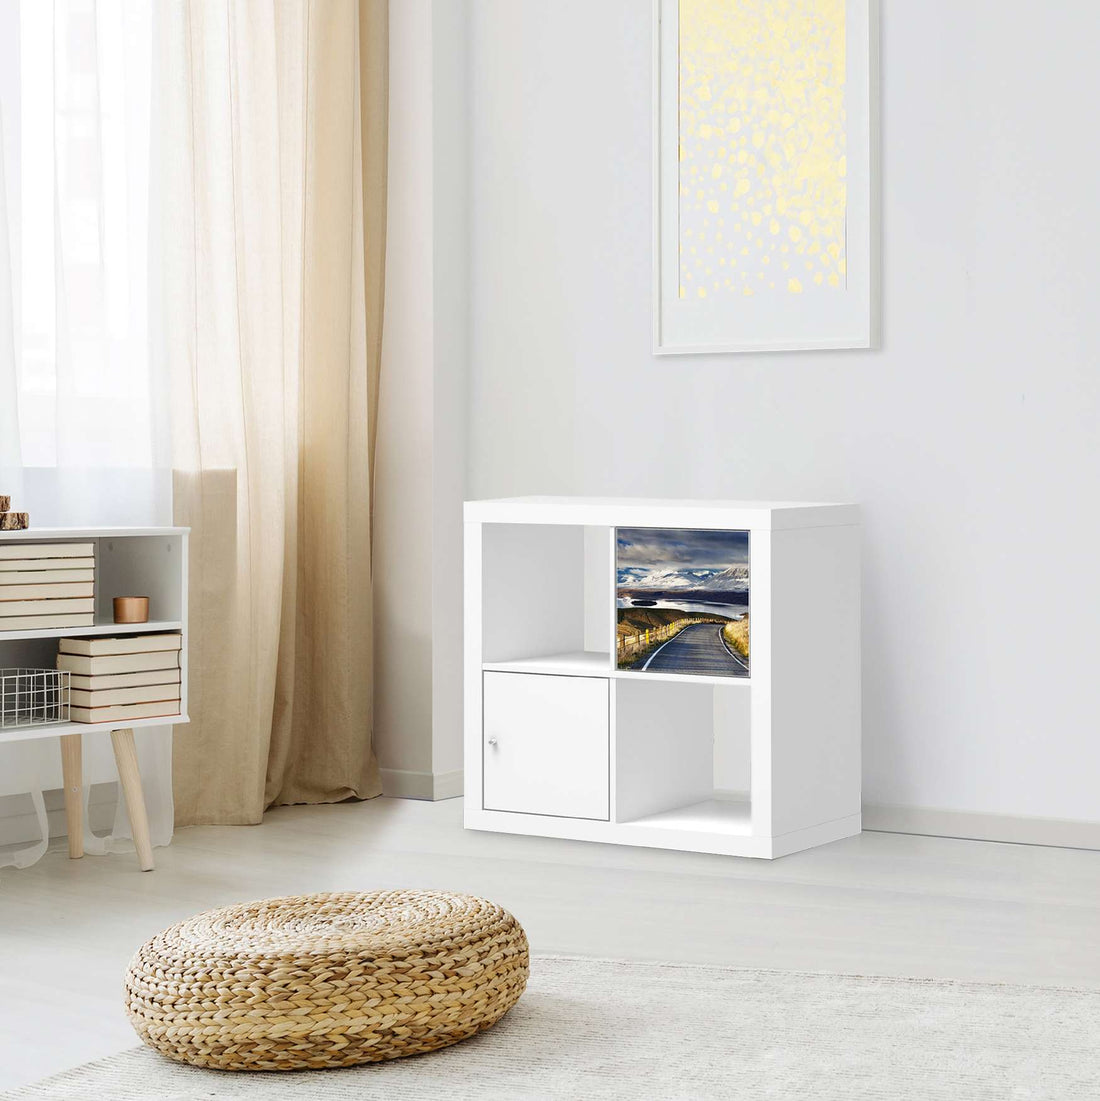 Selbstklebende Folie New Zealand - IKEA Kallax Regal 1 Türe - Wohnzimmer